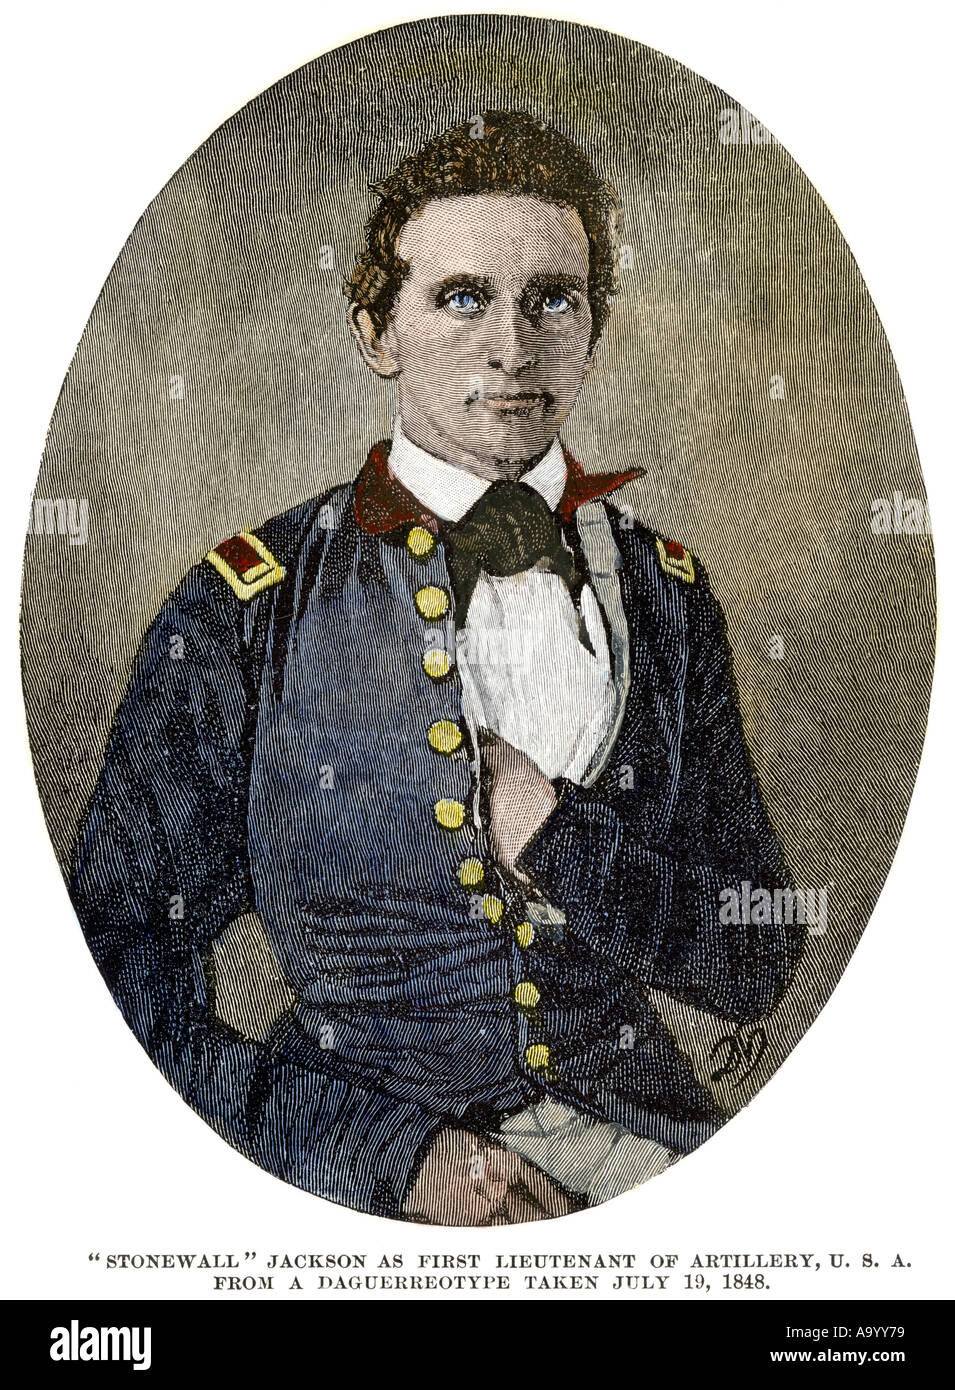 Young Thomas Jackson quando era primo tenente di artiglieria US Army 1848 più tardi noto come Stonewall Jackson. Colorate a mano la xilografia Foto Stock